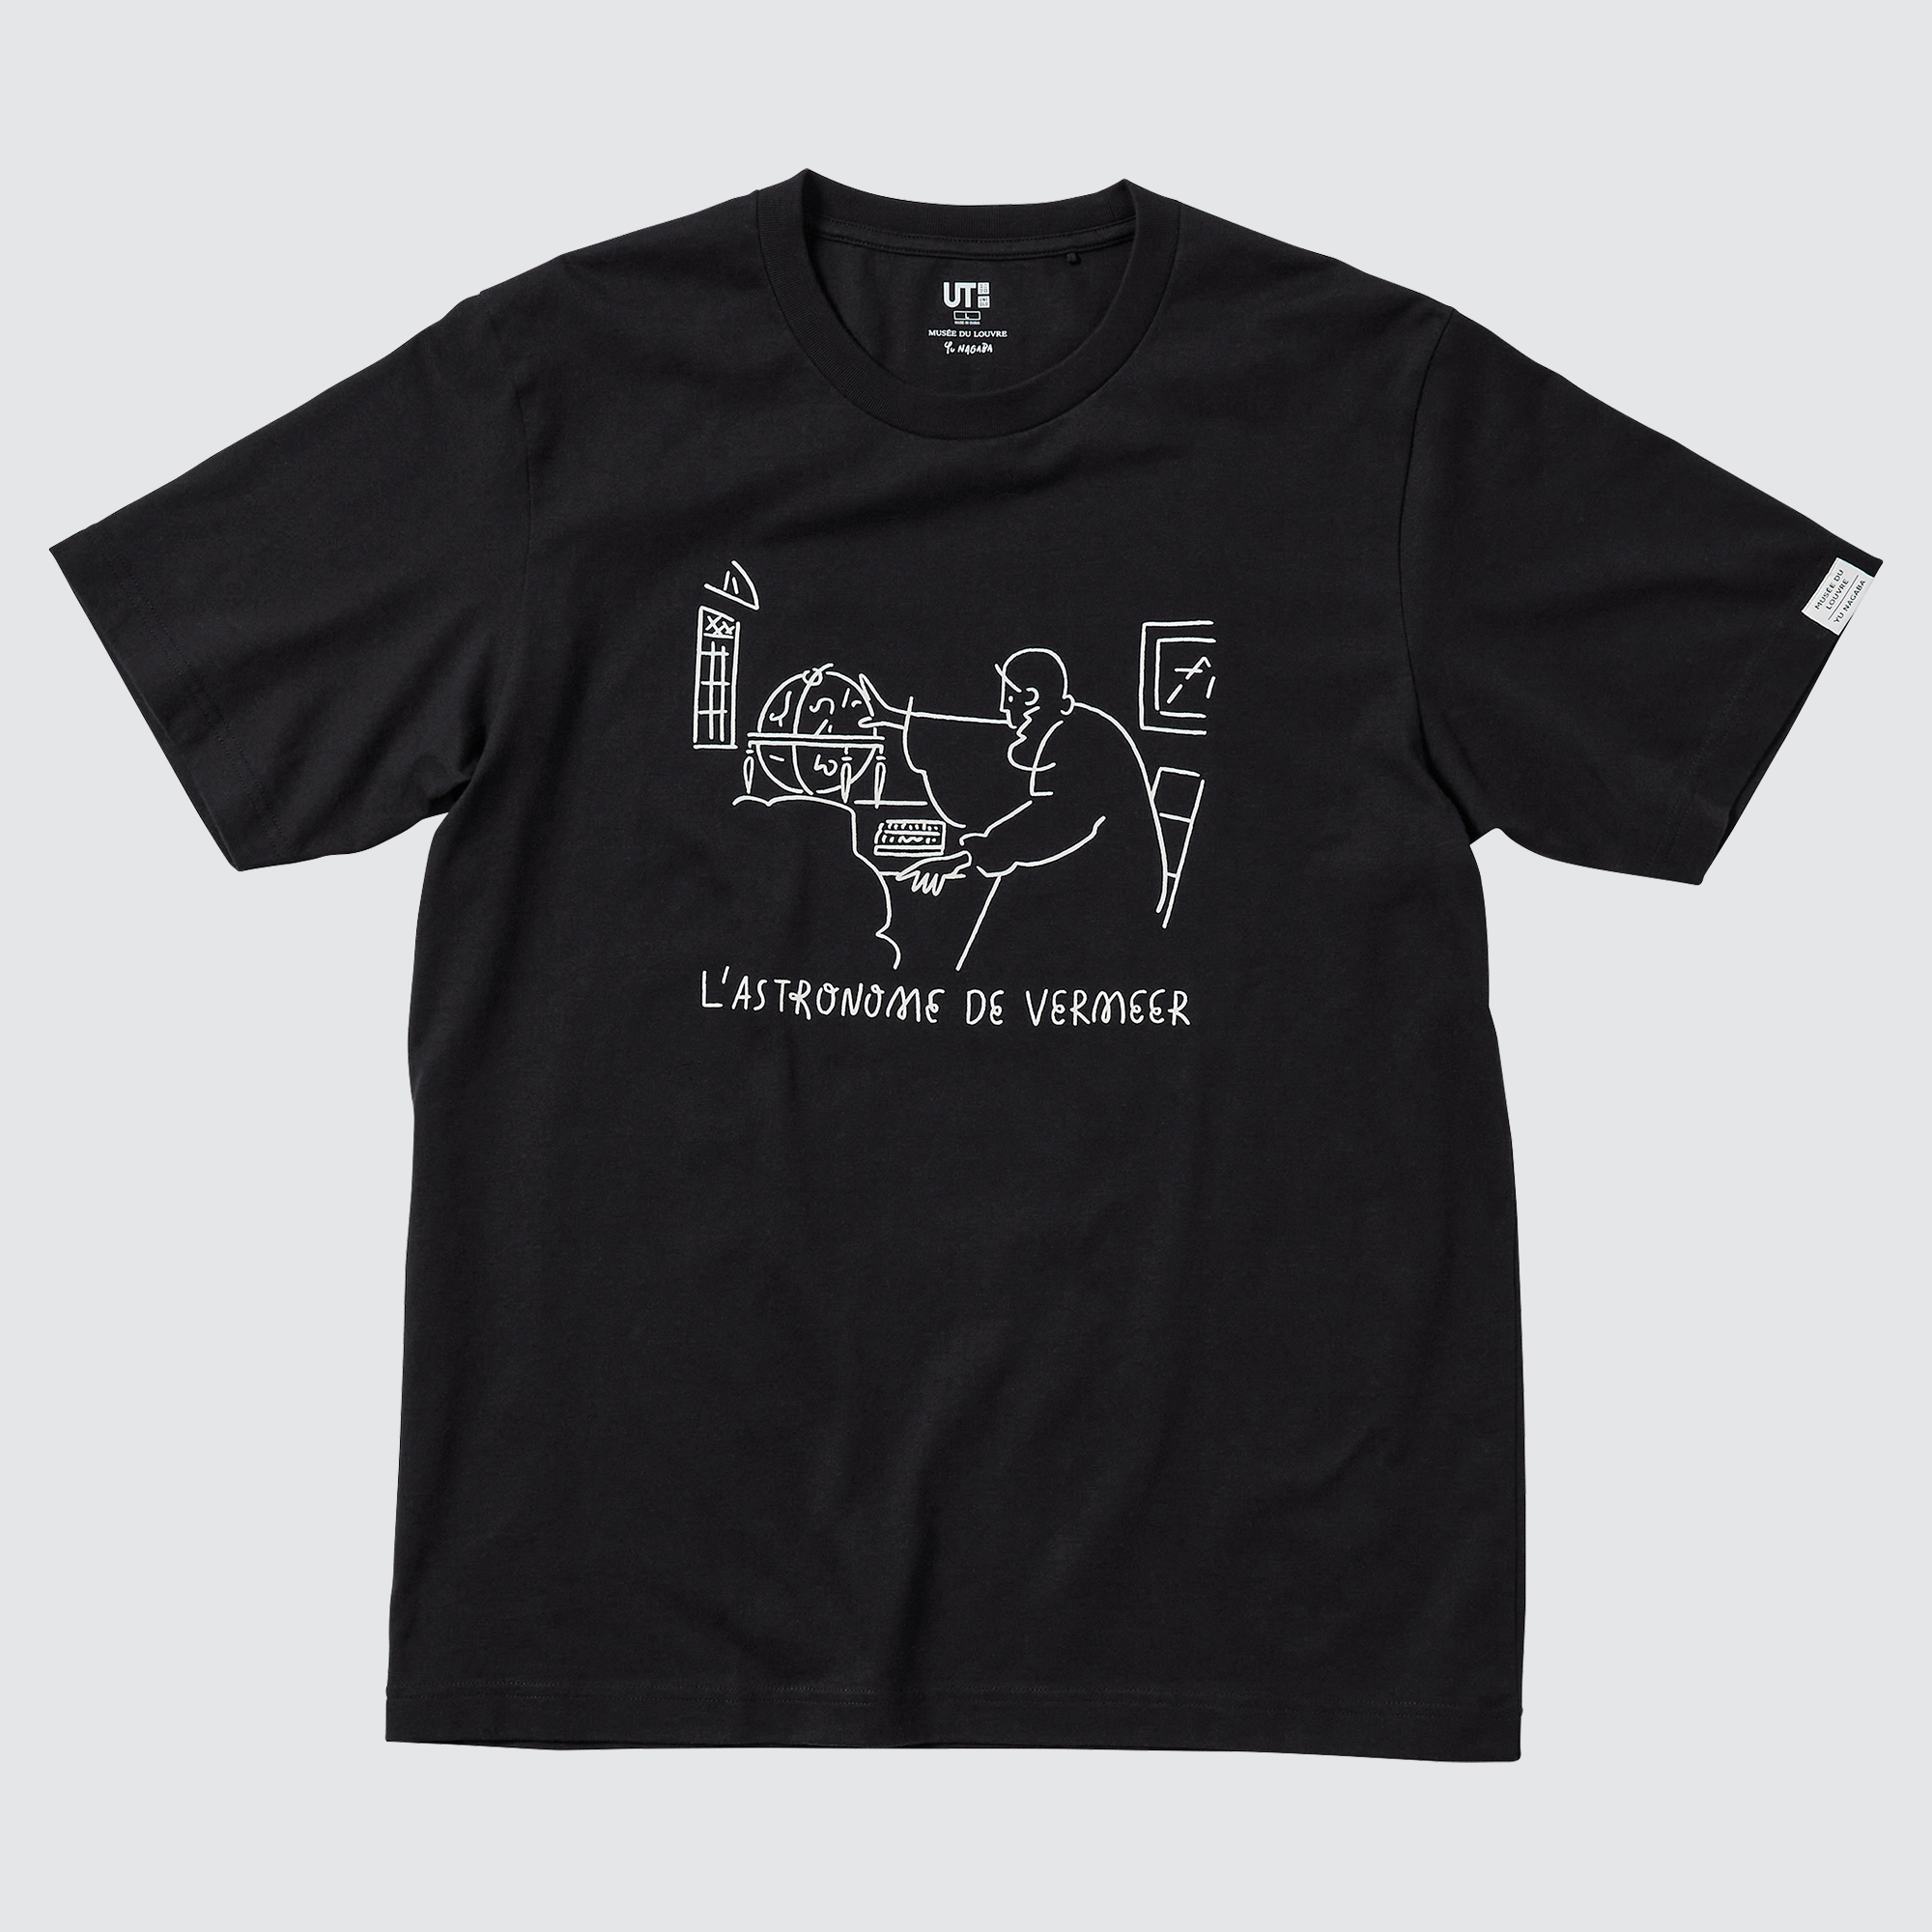 UNIQLO 2019 Hommes Ou T-shirt graphique dewazakura Noir Nouveau Japon 418129